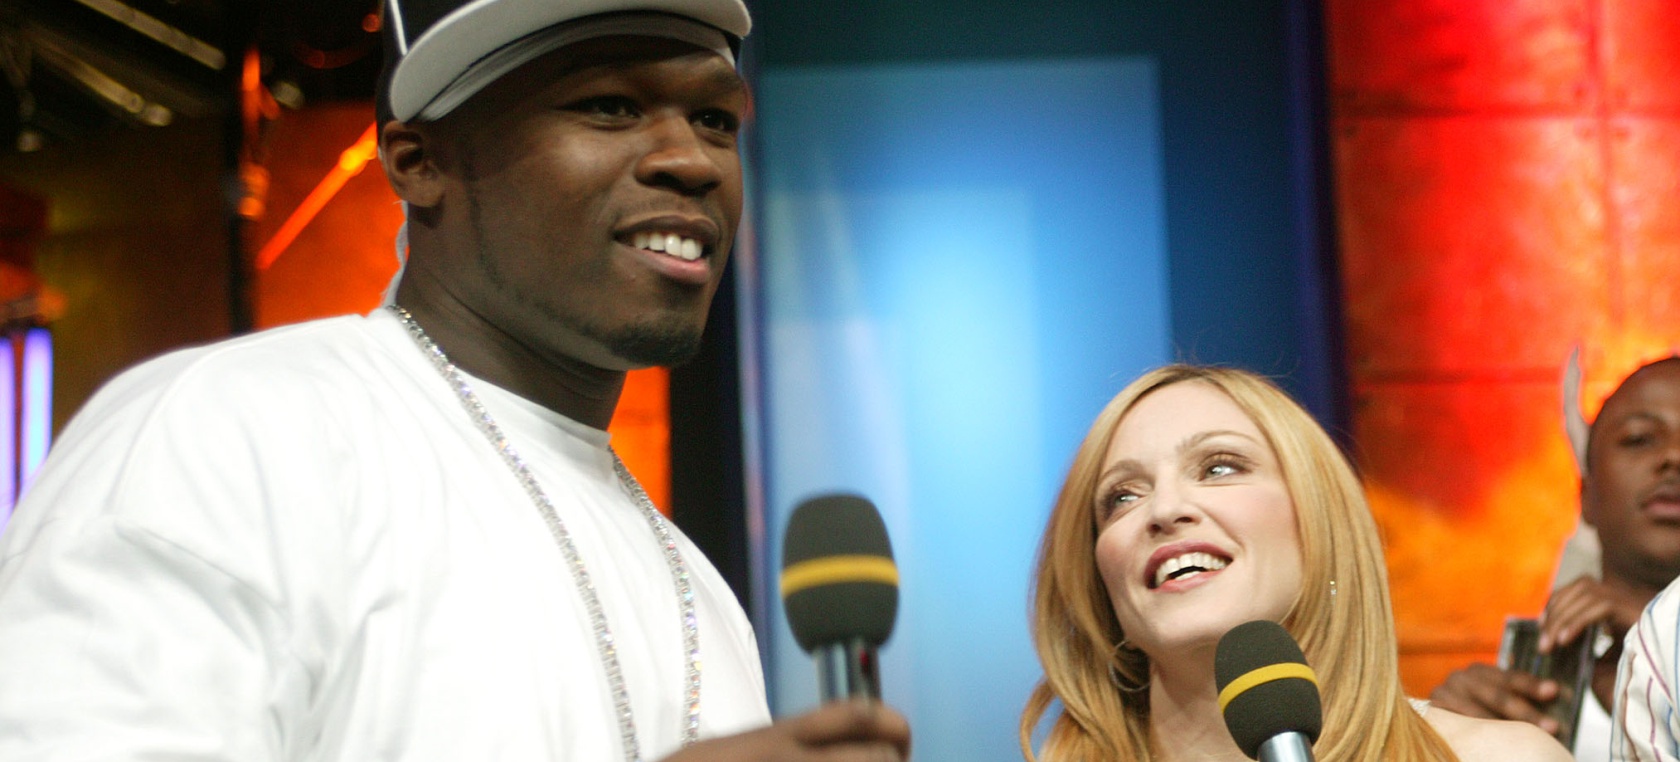 Historia del troleo de 50 Cent a Madonna: “Deja de hacerme bullying”